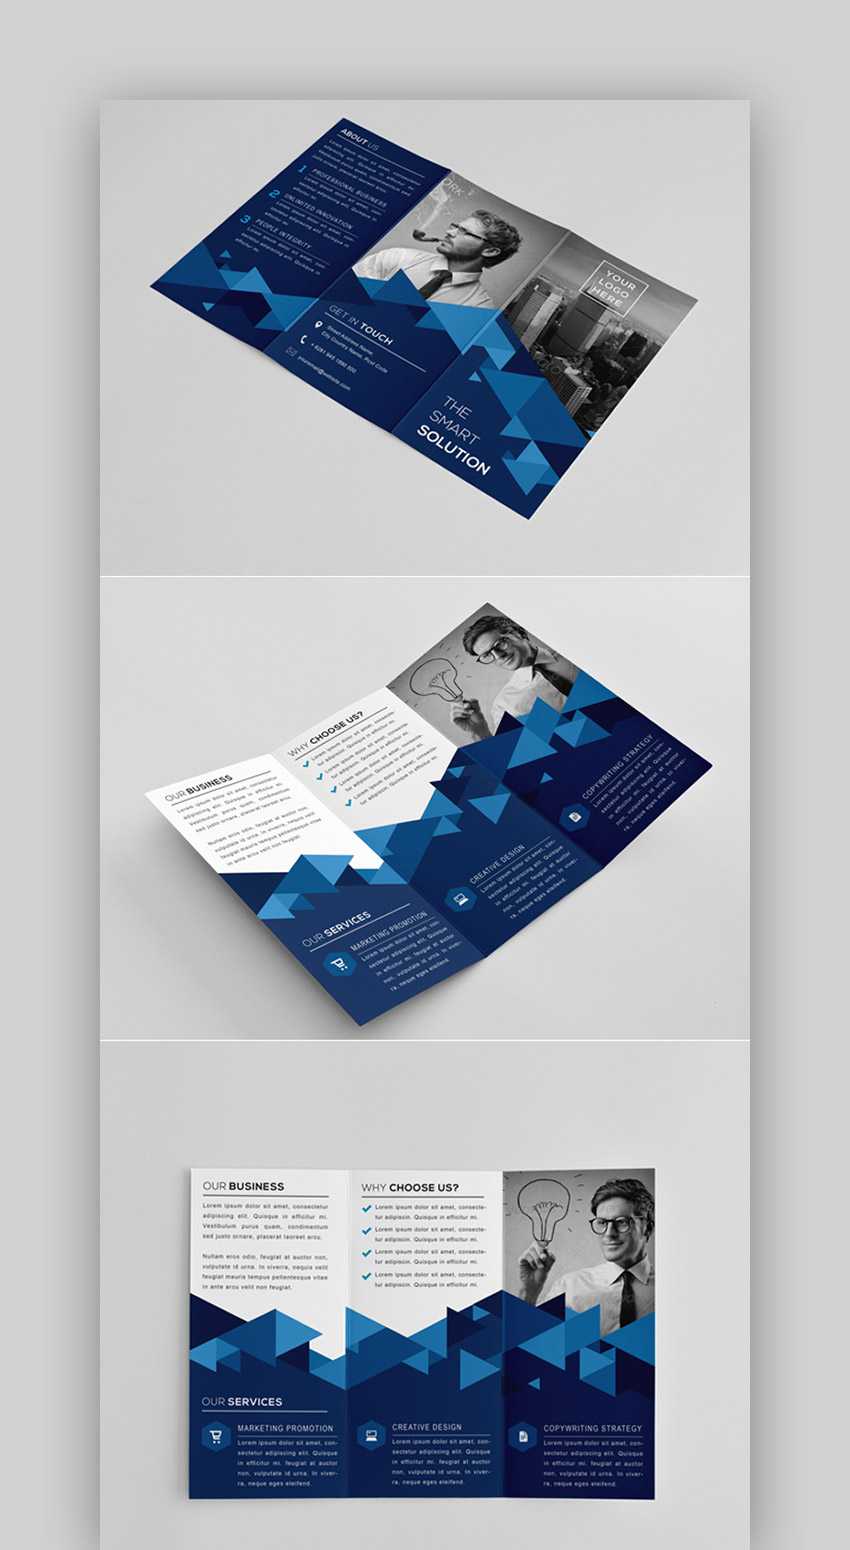 30 Best Indesign Brochure Templates – Creative Business Pertaining To Brochure Template Indesign Free Download